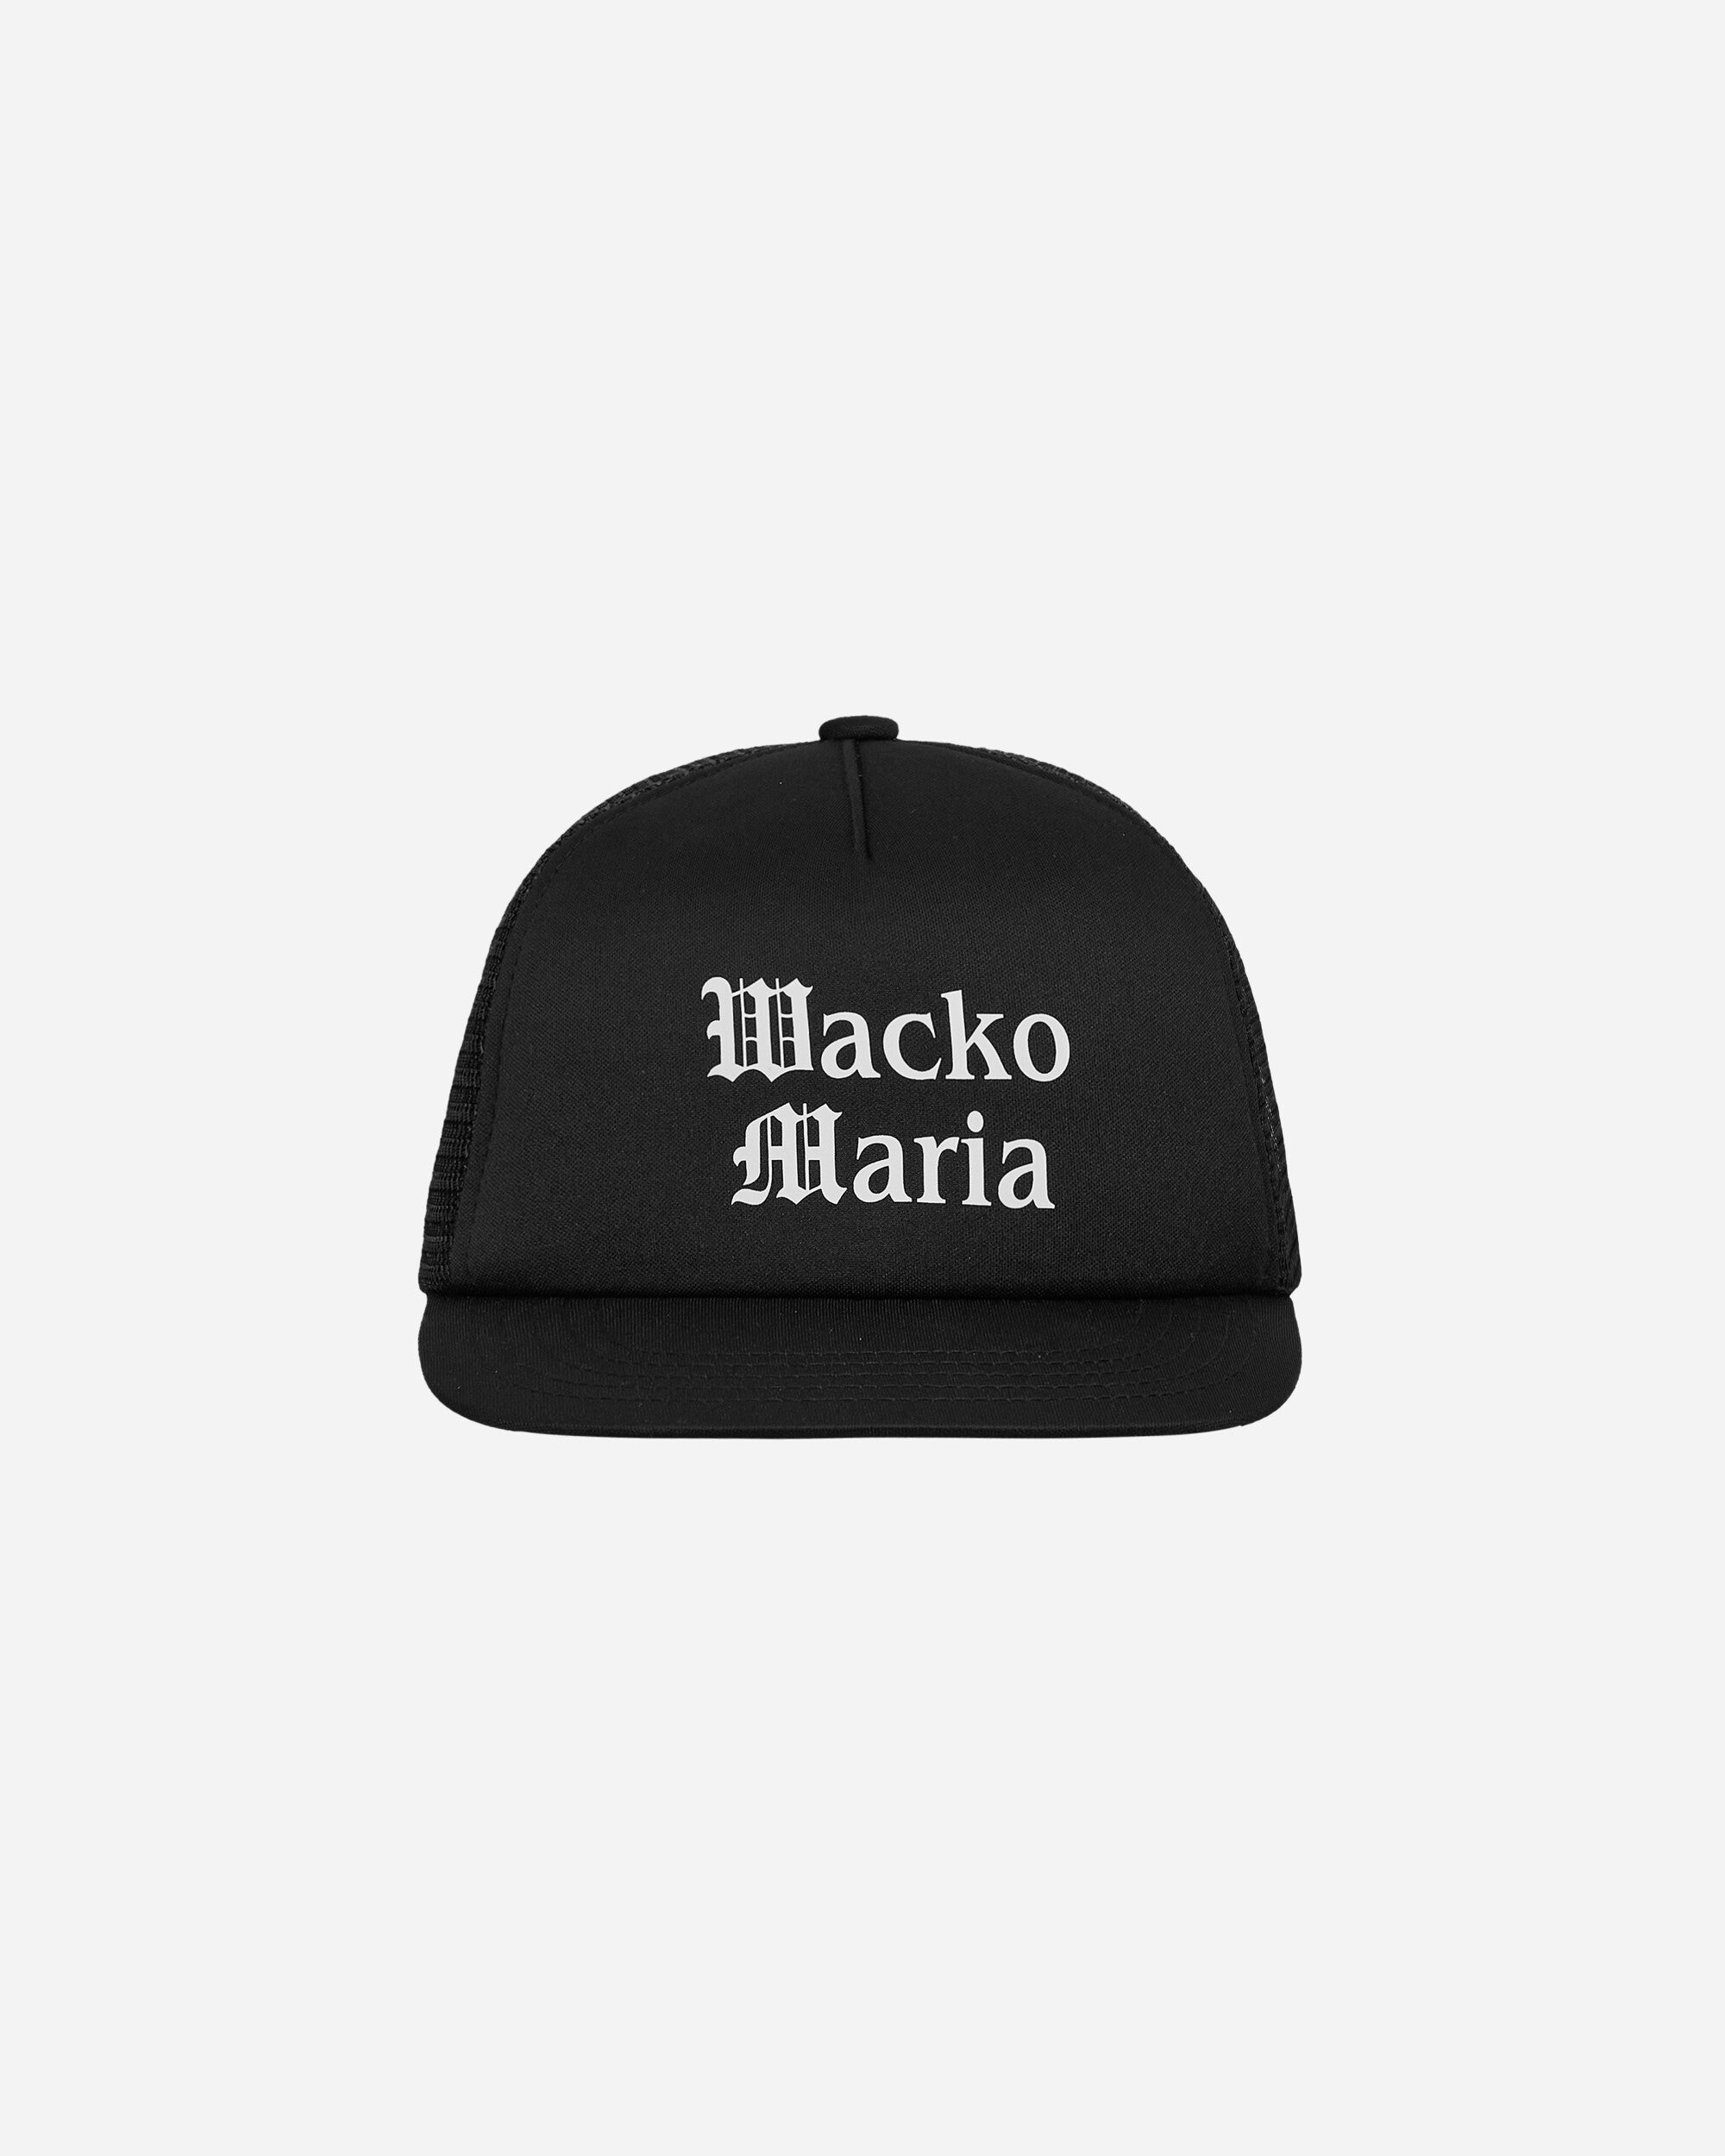 WACKO MARIA Mesh Cap Black Hats Caps WMA-CP01 BLK